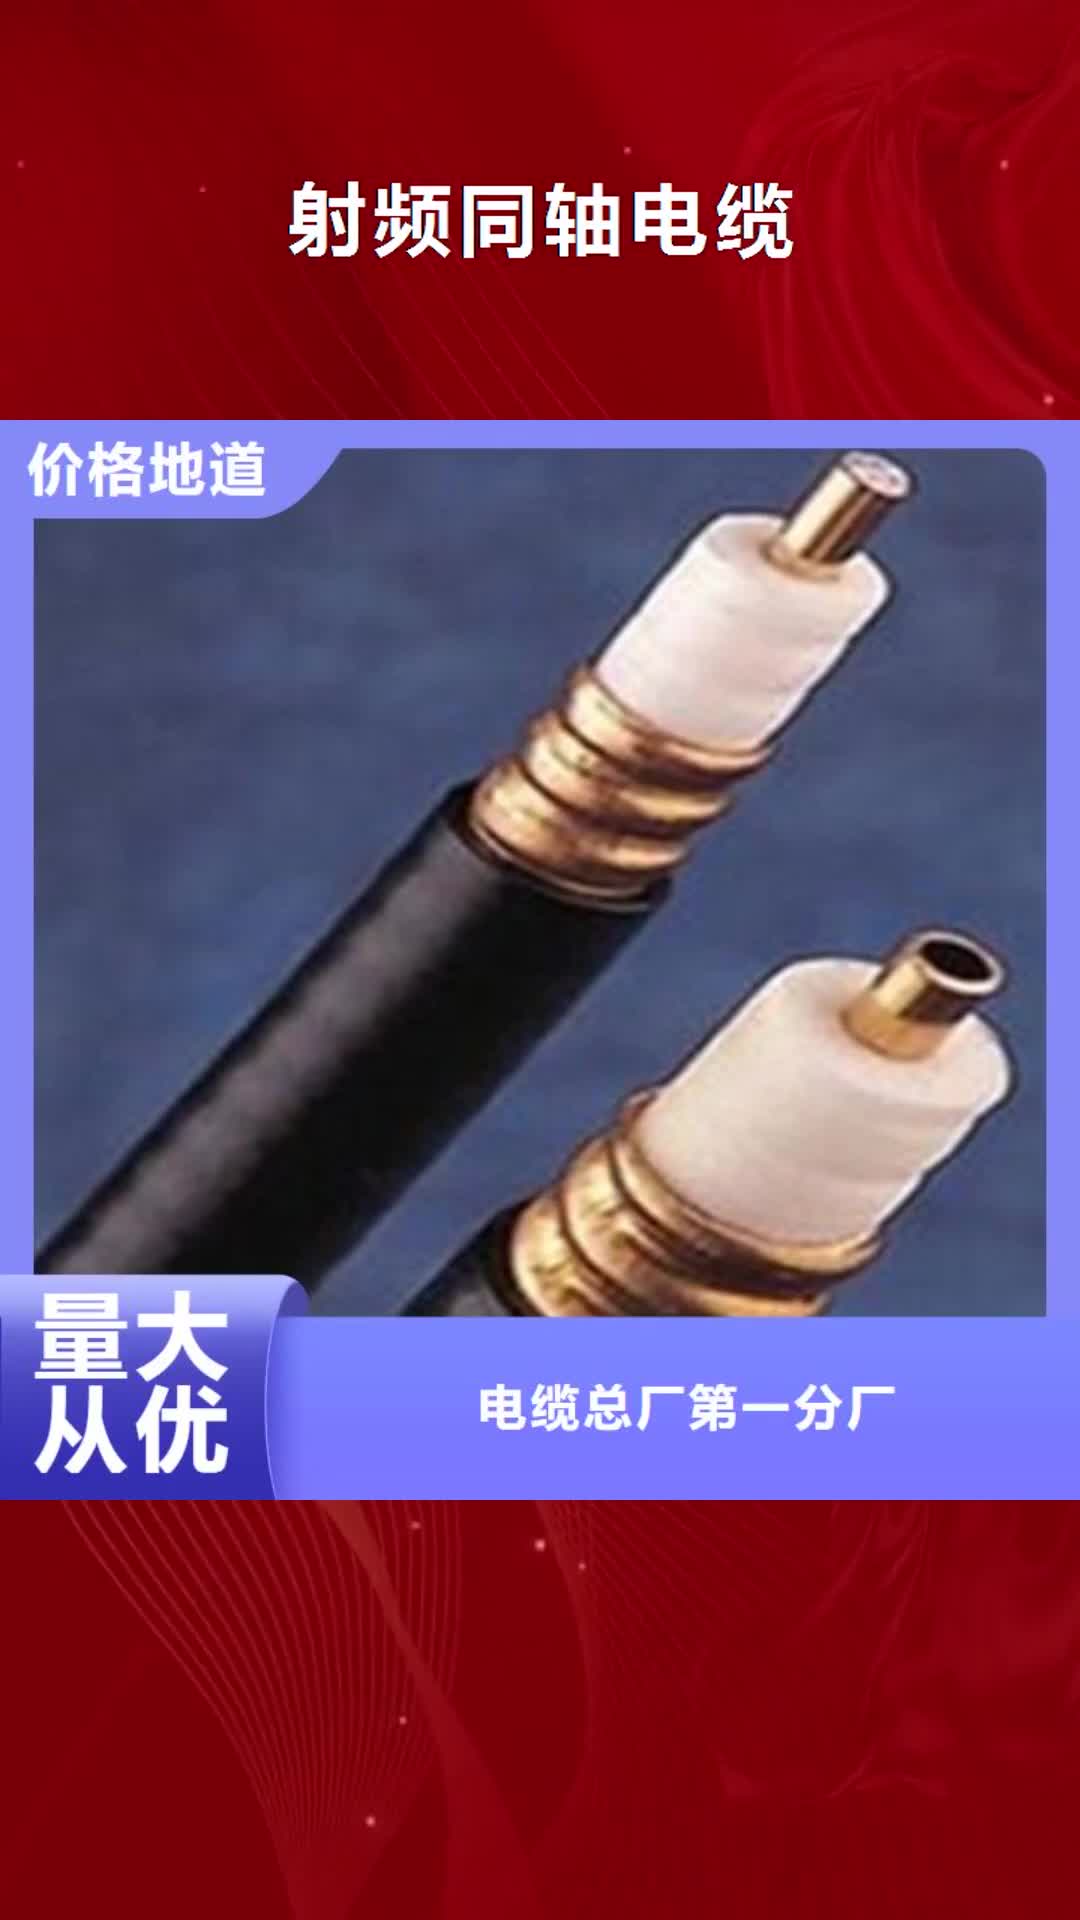 银川【射频同轴电缆】,控制电缆专业完善售后